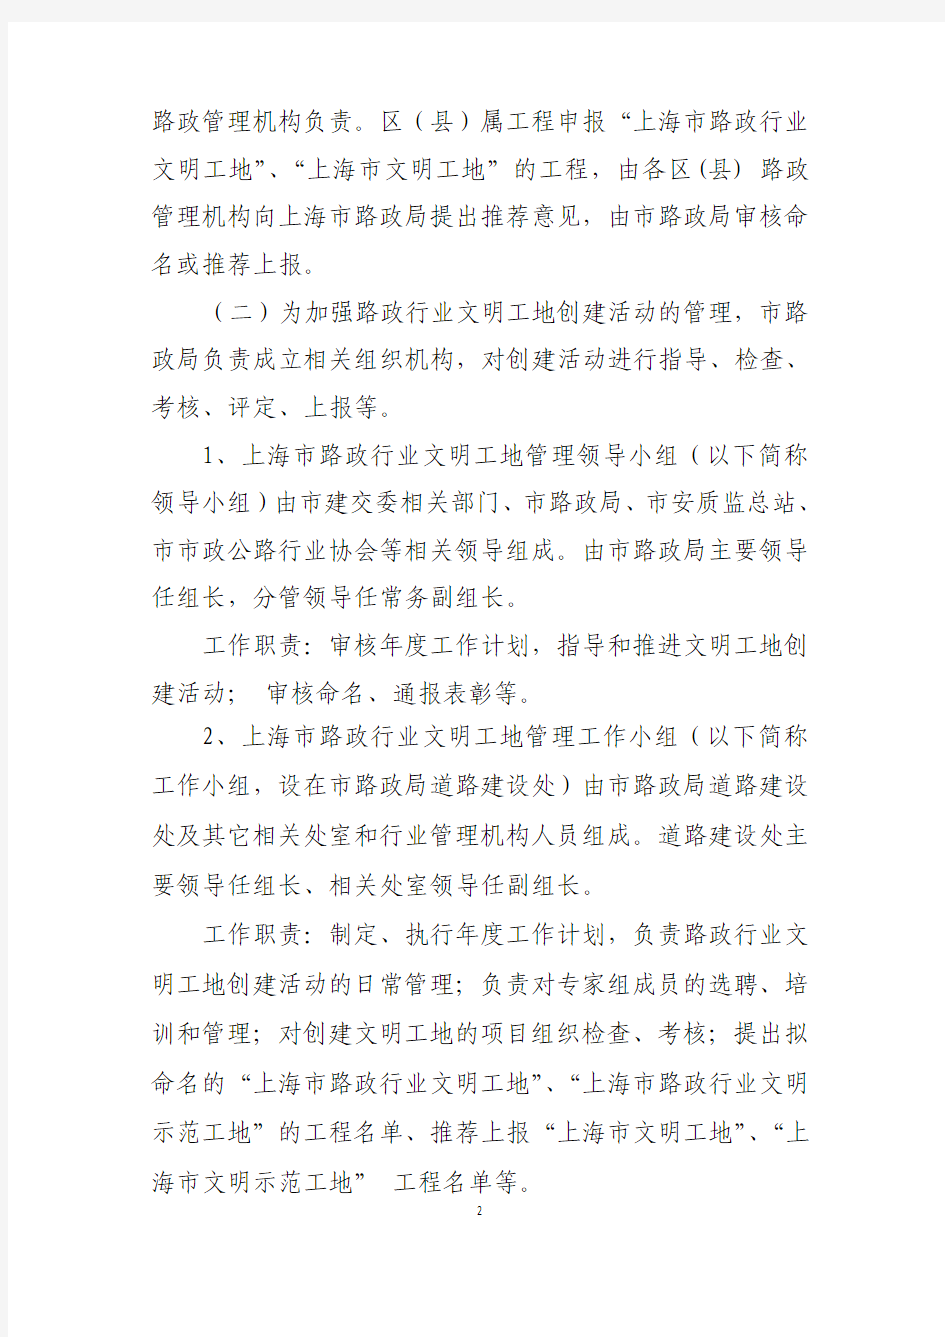 上海市路政行业文明工地管理办法(试行)新